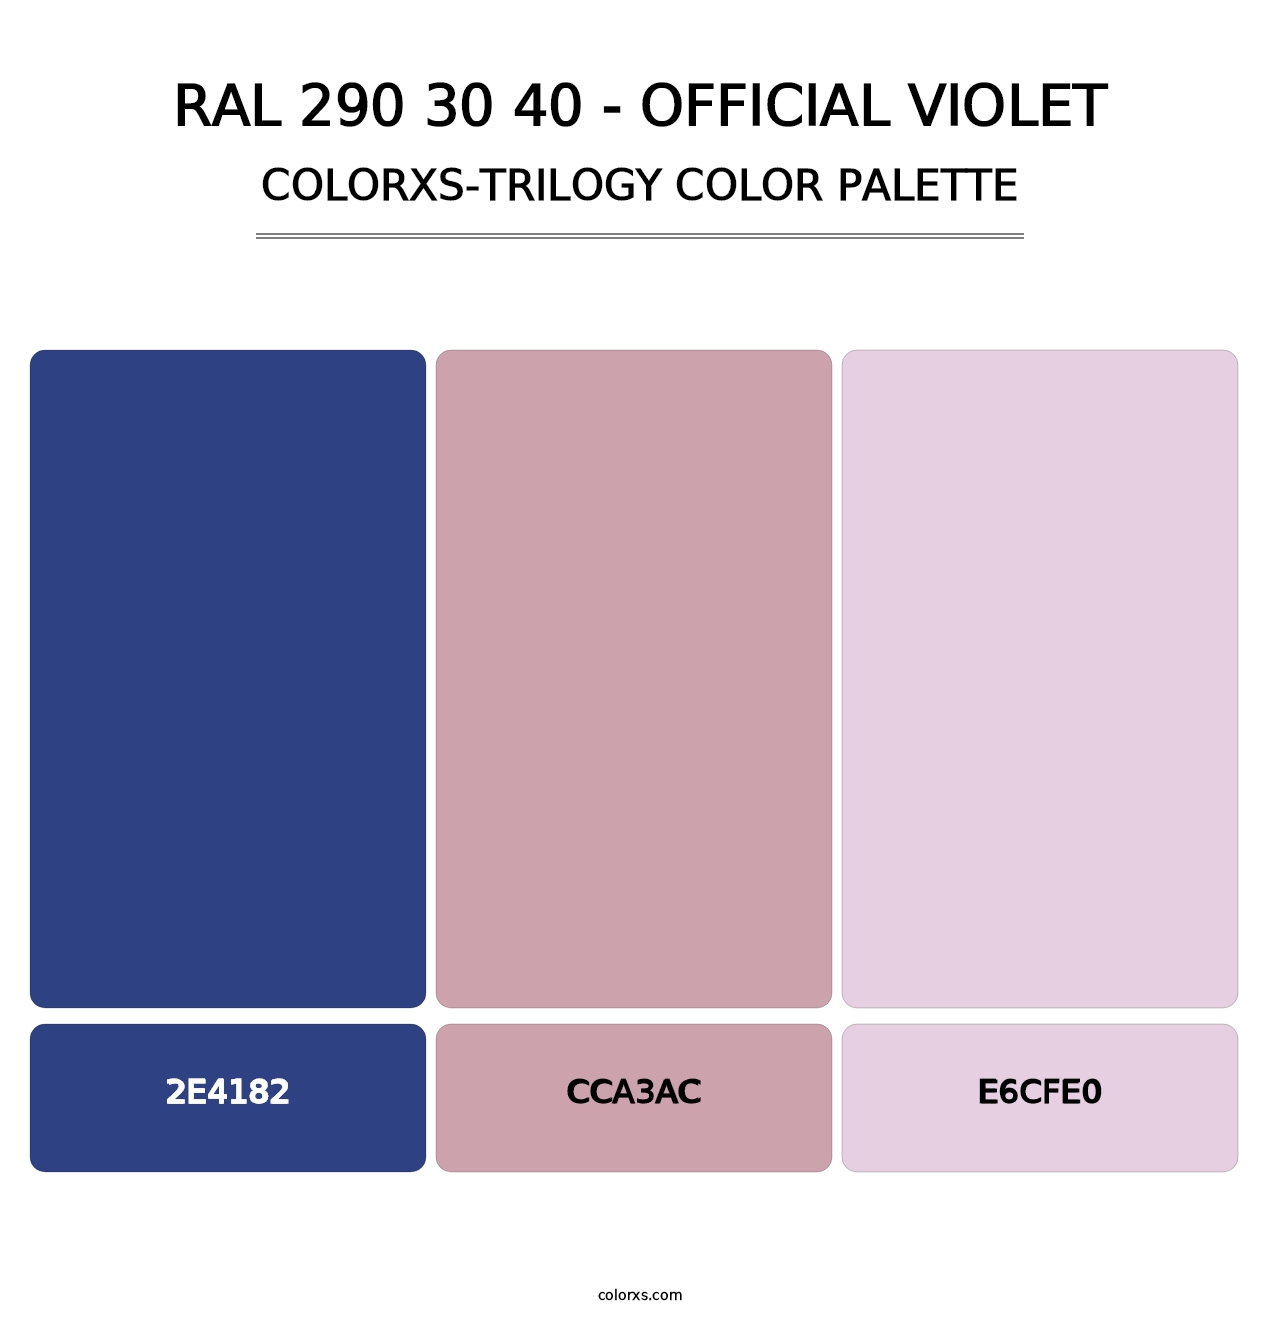 RAL 290 30 40 - Official Violet - Colorxs Trilogy Palette